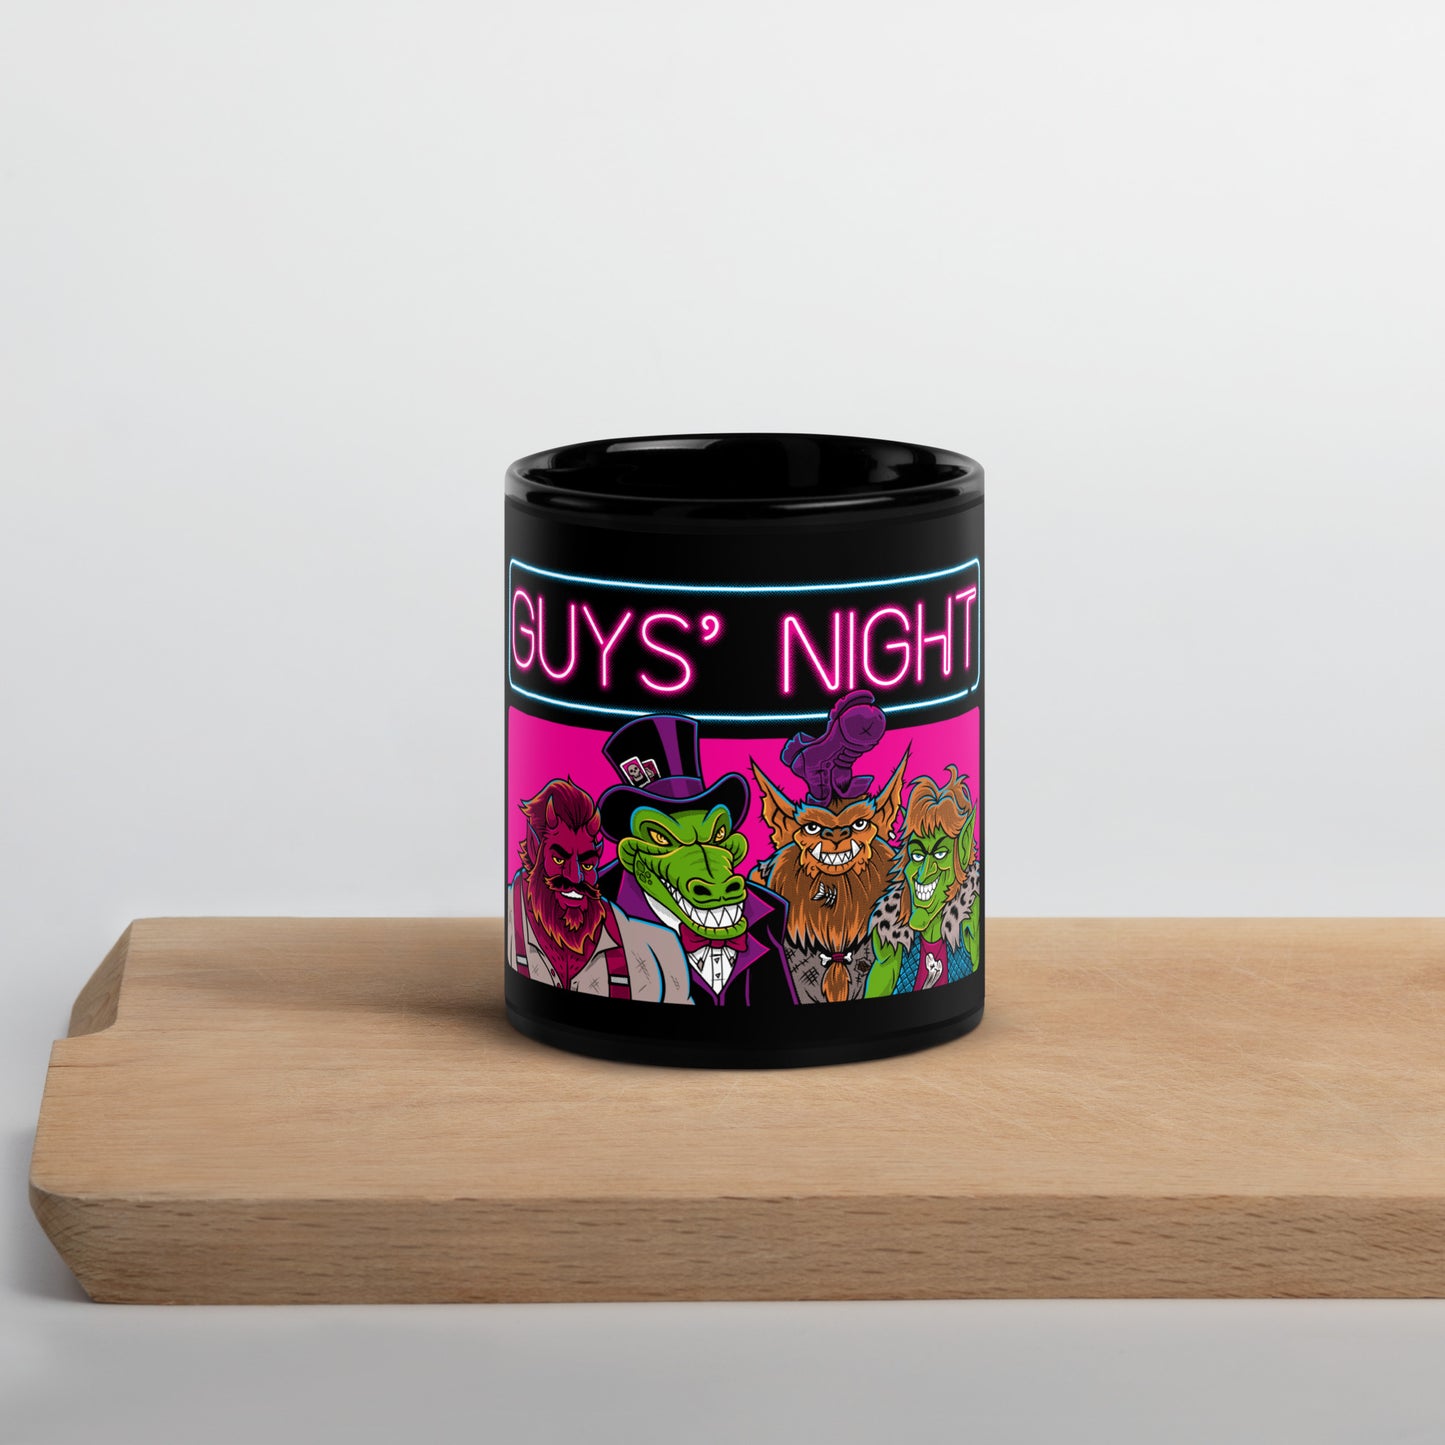 Guys' Night - Mug